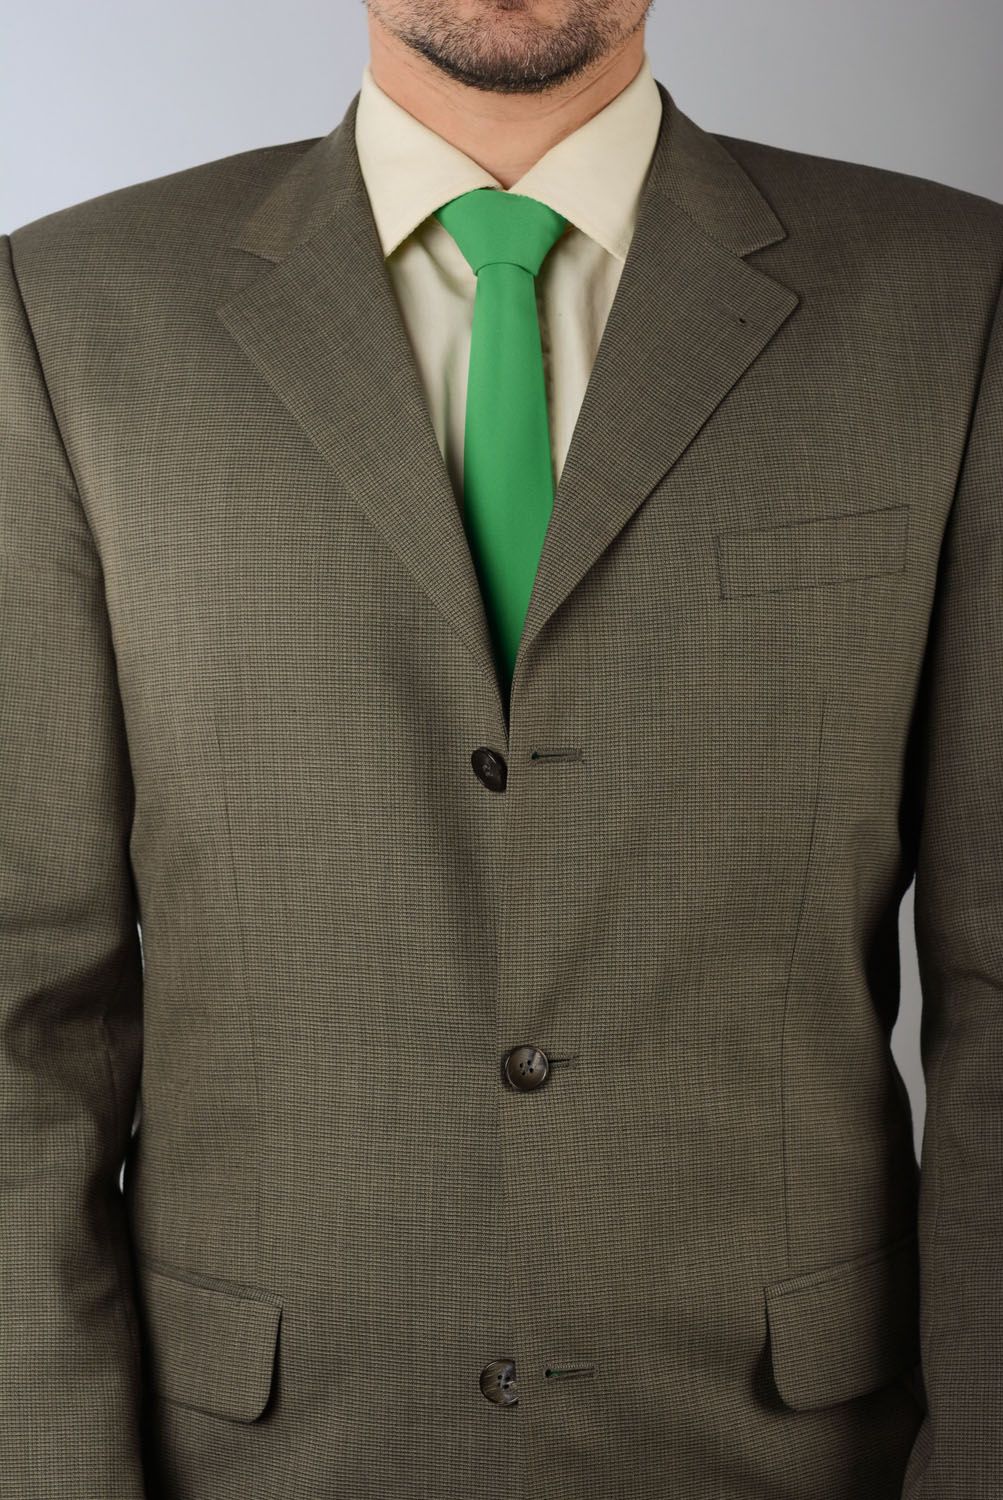 Corbata verde de gabardina foto 4